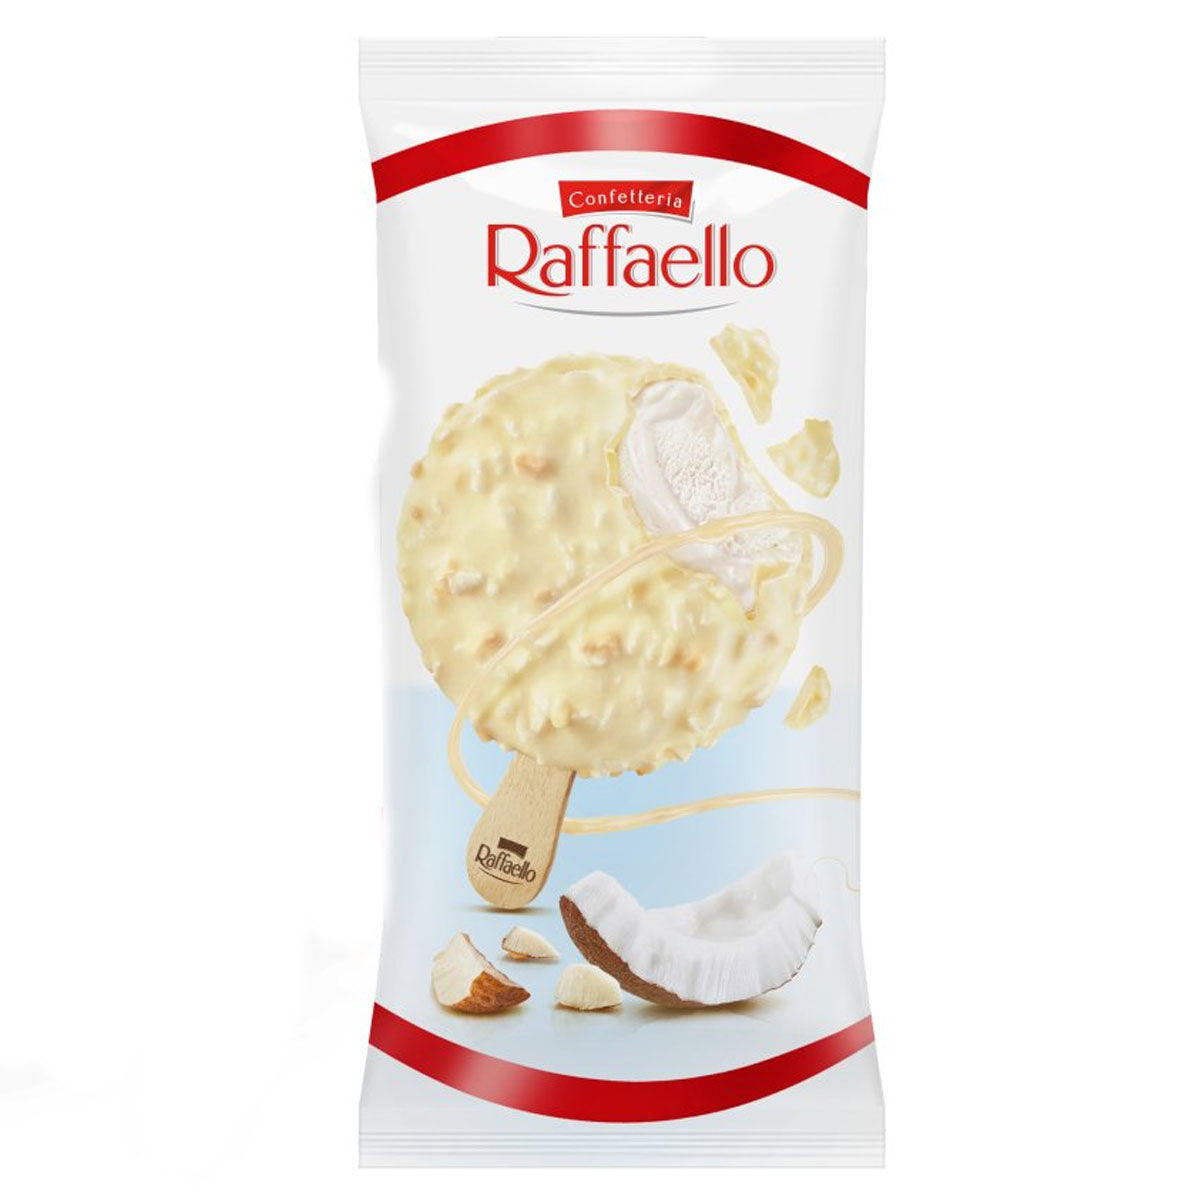 A bag of Raffaello - Ice Cream Stick, Coconut and Almond - 70ml on a white background.